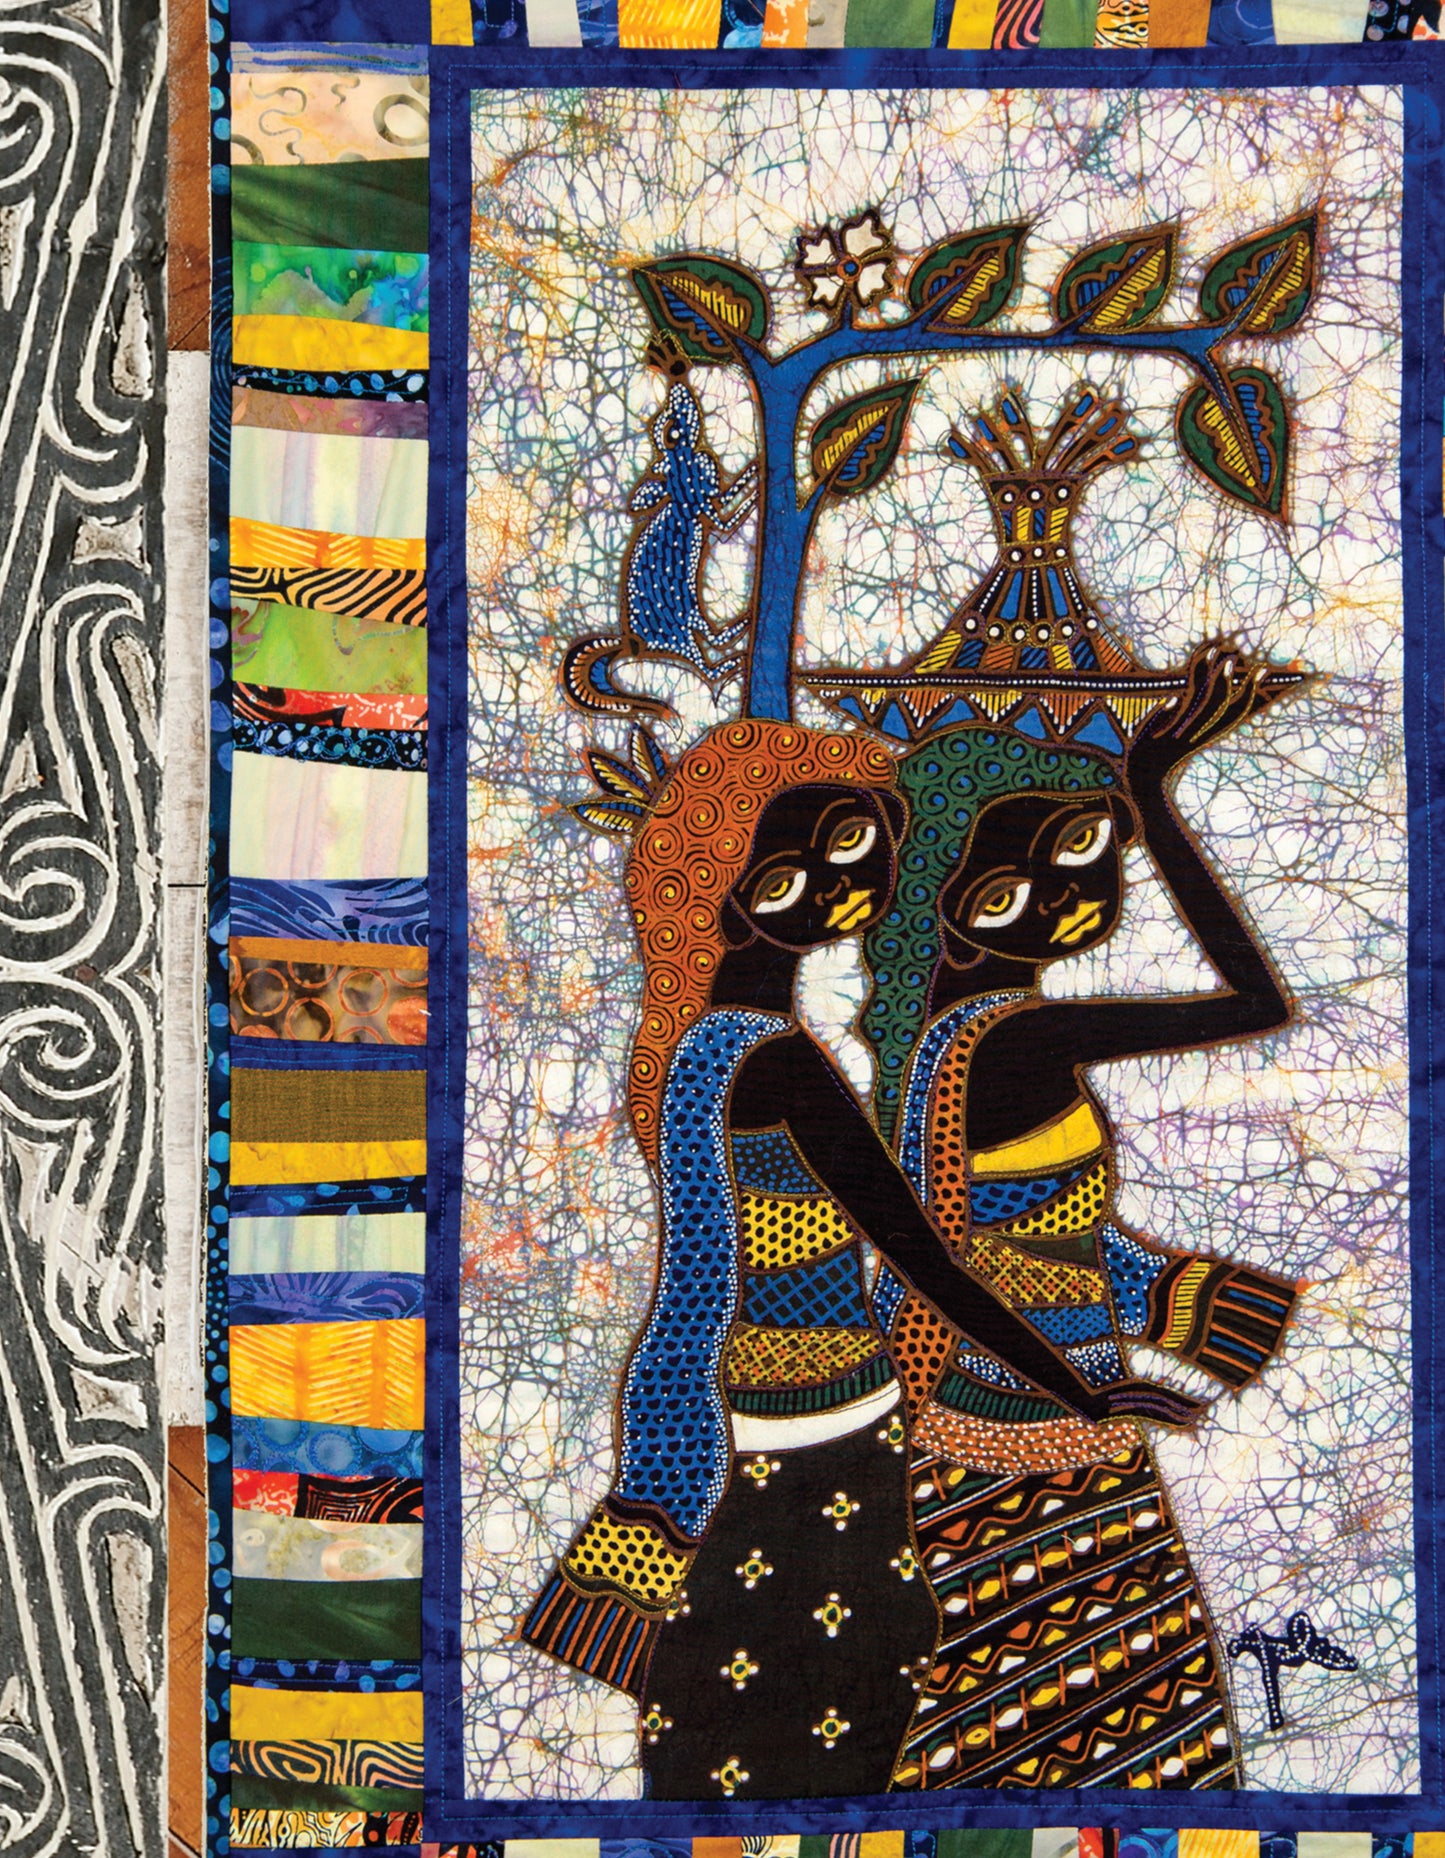 Colorful Batik Panel Quilts